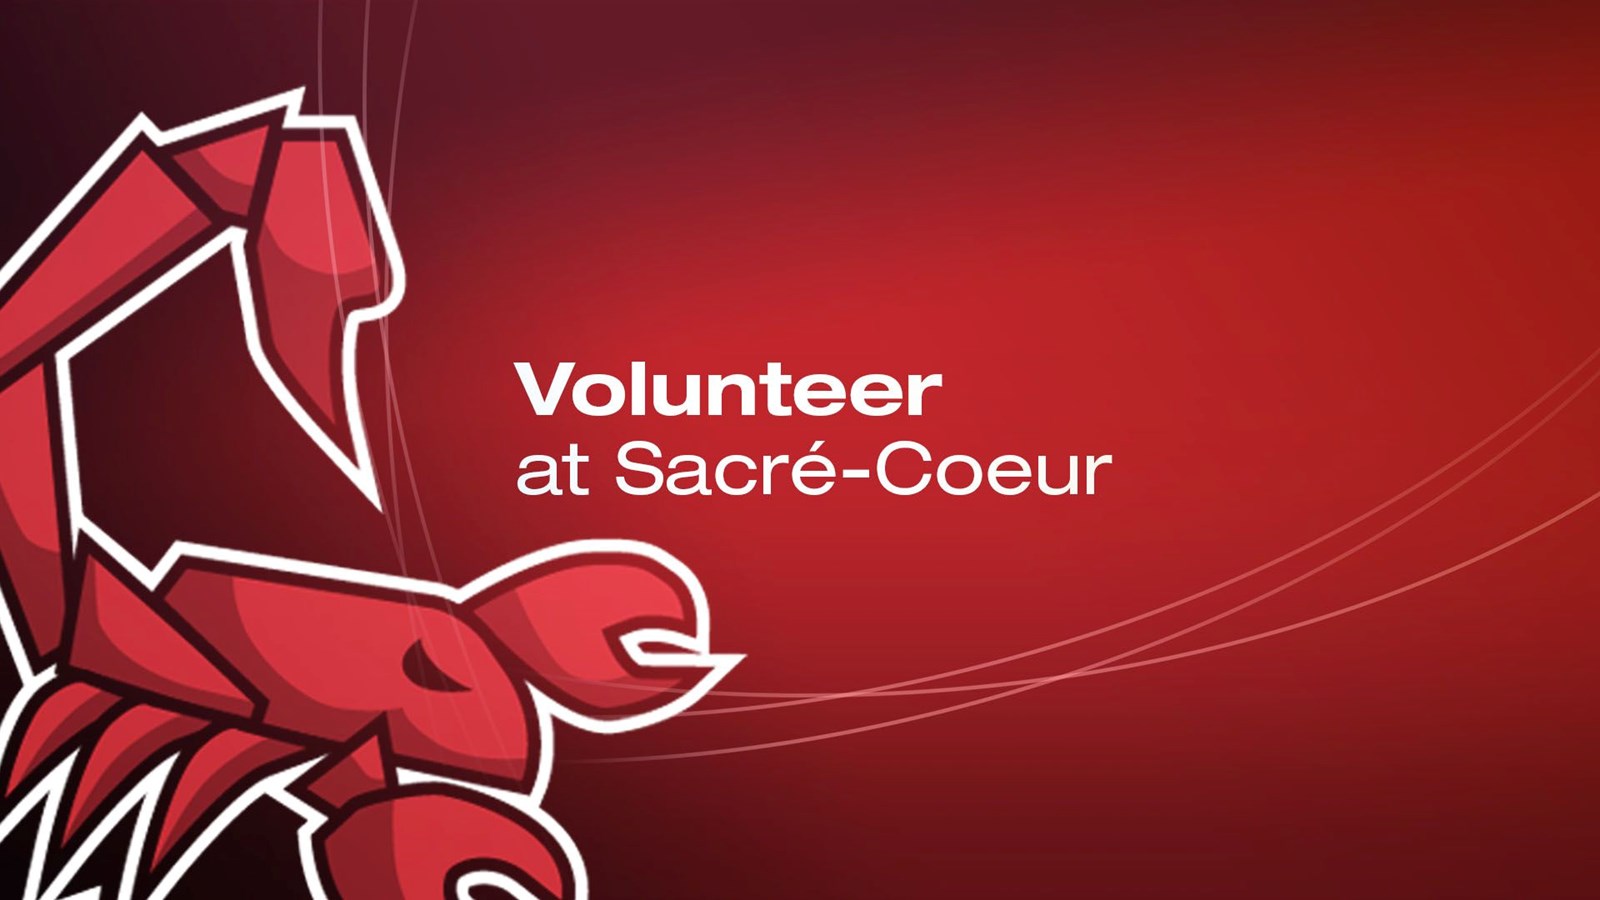 Volunteer at Sacré-Coeur